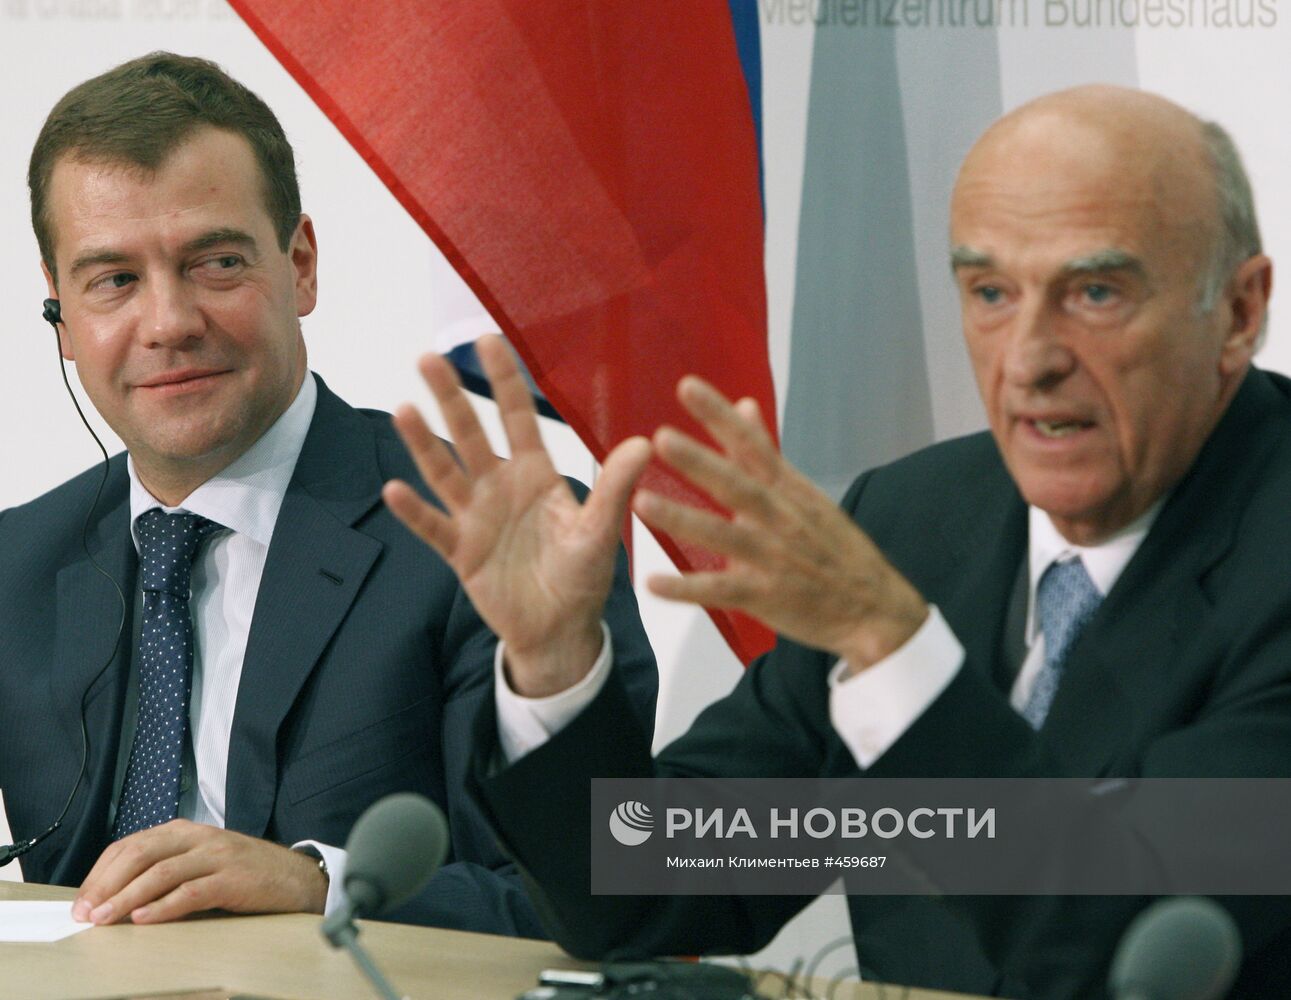 Государственный визит президента РФ Д. Медведева в Швейцарию